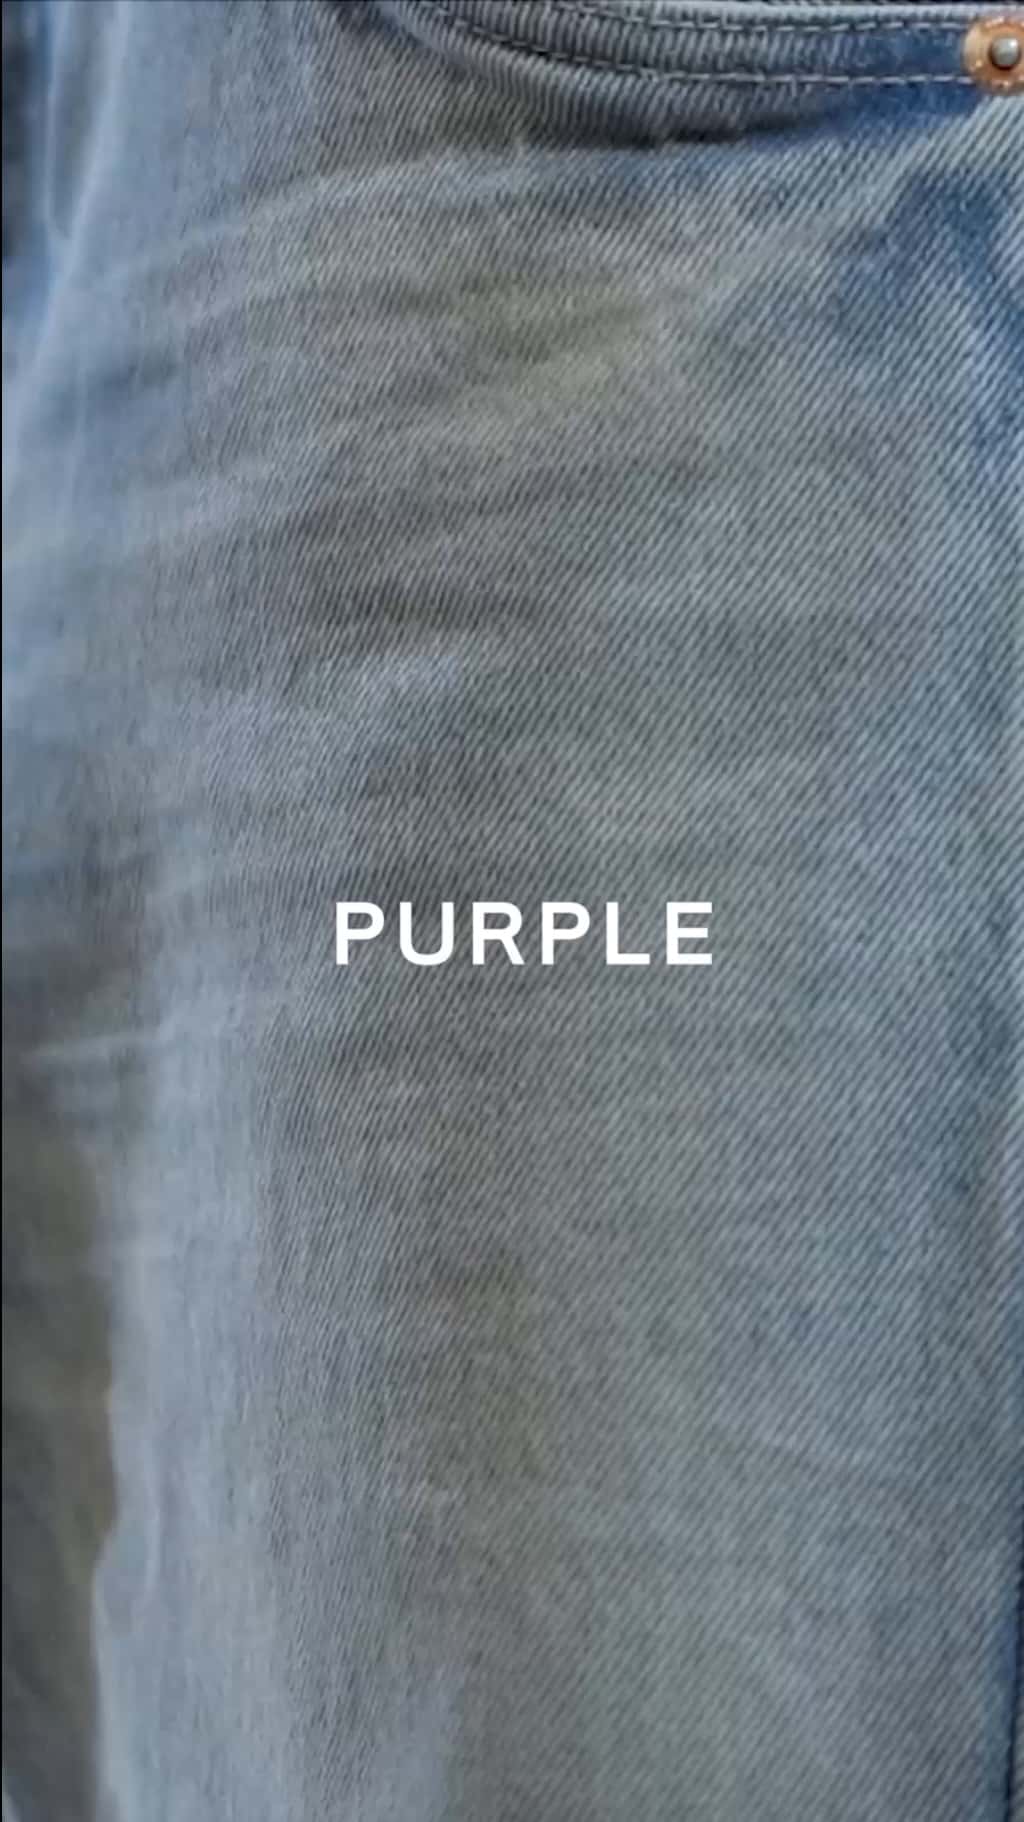 Replying to @Lagordiiiz purple is size XL/XXL & beige is size 5X #shap